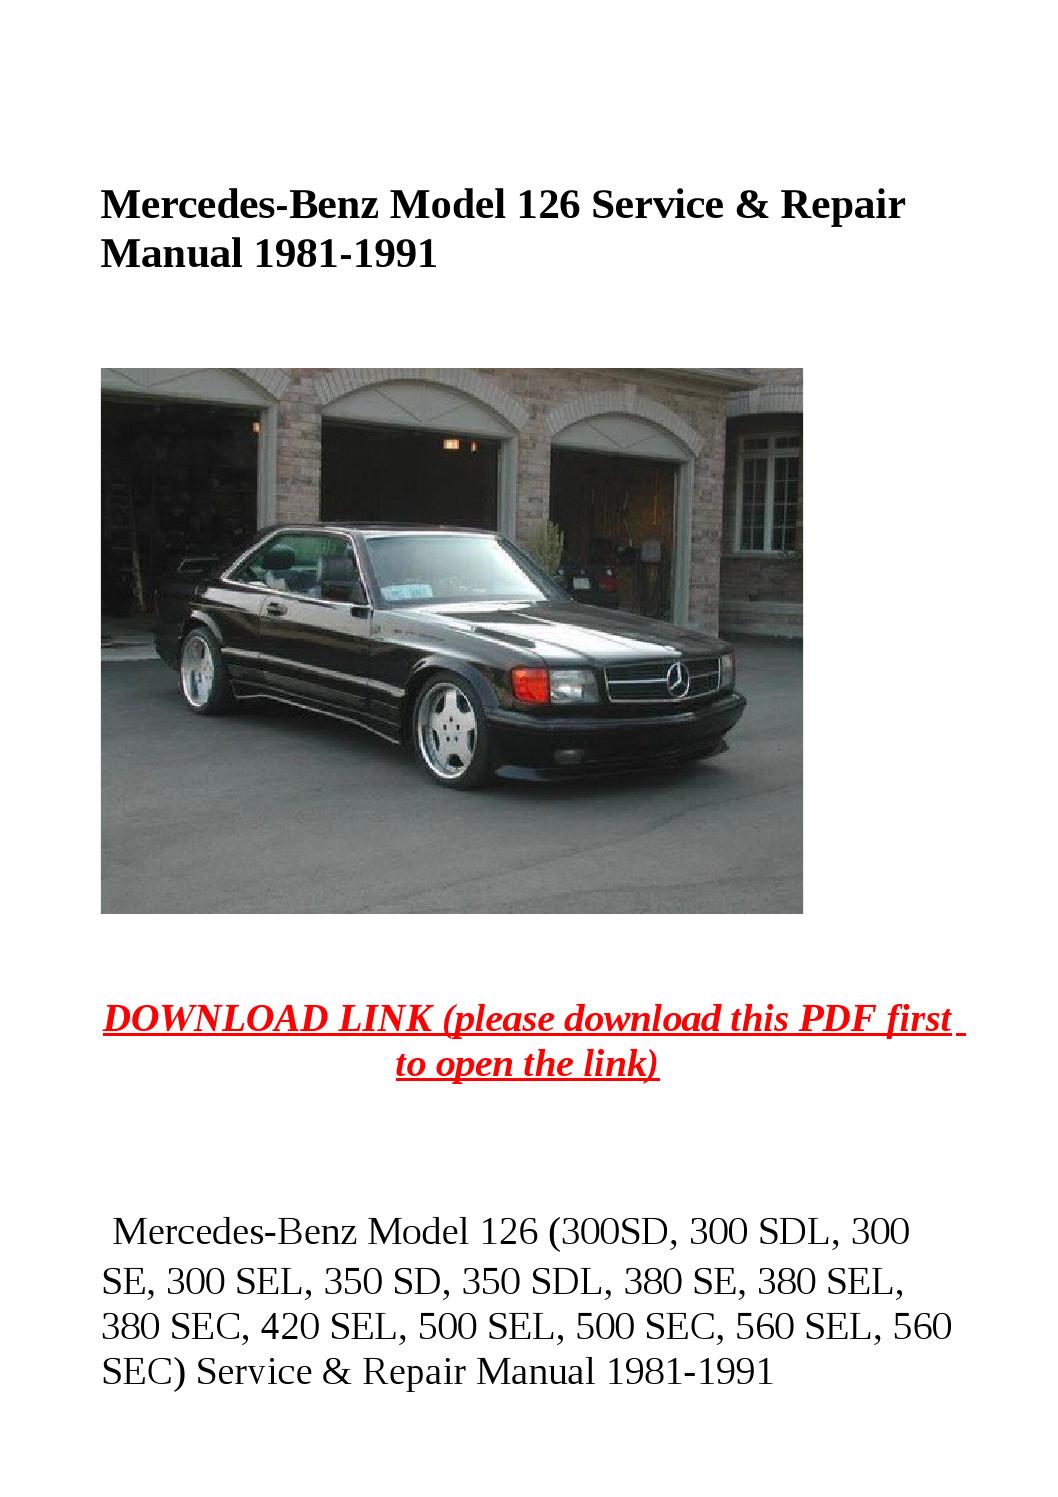 Mercedes Benz Repair Manual Download